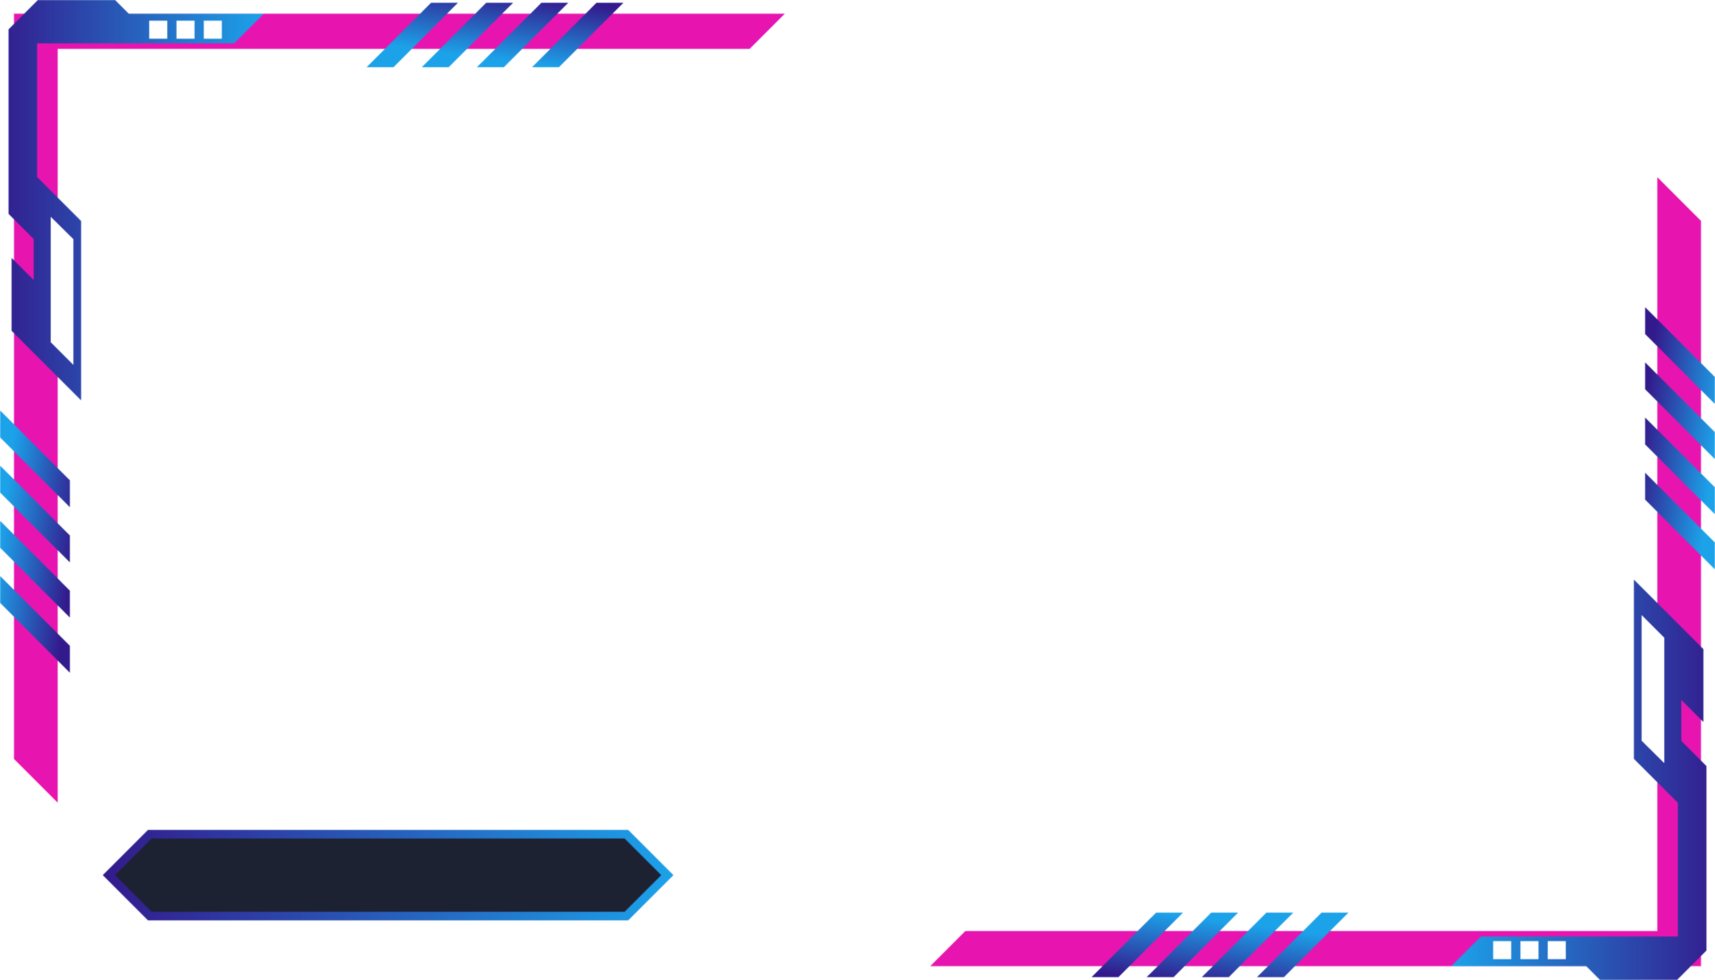 painel de tela de jogo futurista simples png com formas abstratas. sobreposição de streaming de jogos online e design de interface de usuário com cores rosa e azul. imagem metálica do painel de sobreposição de jogos.